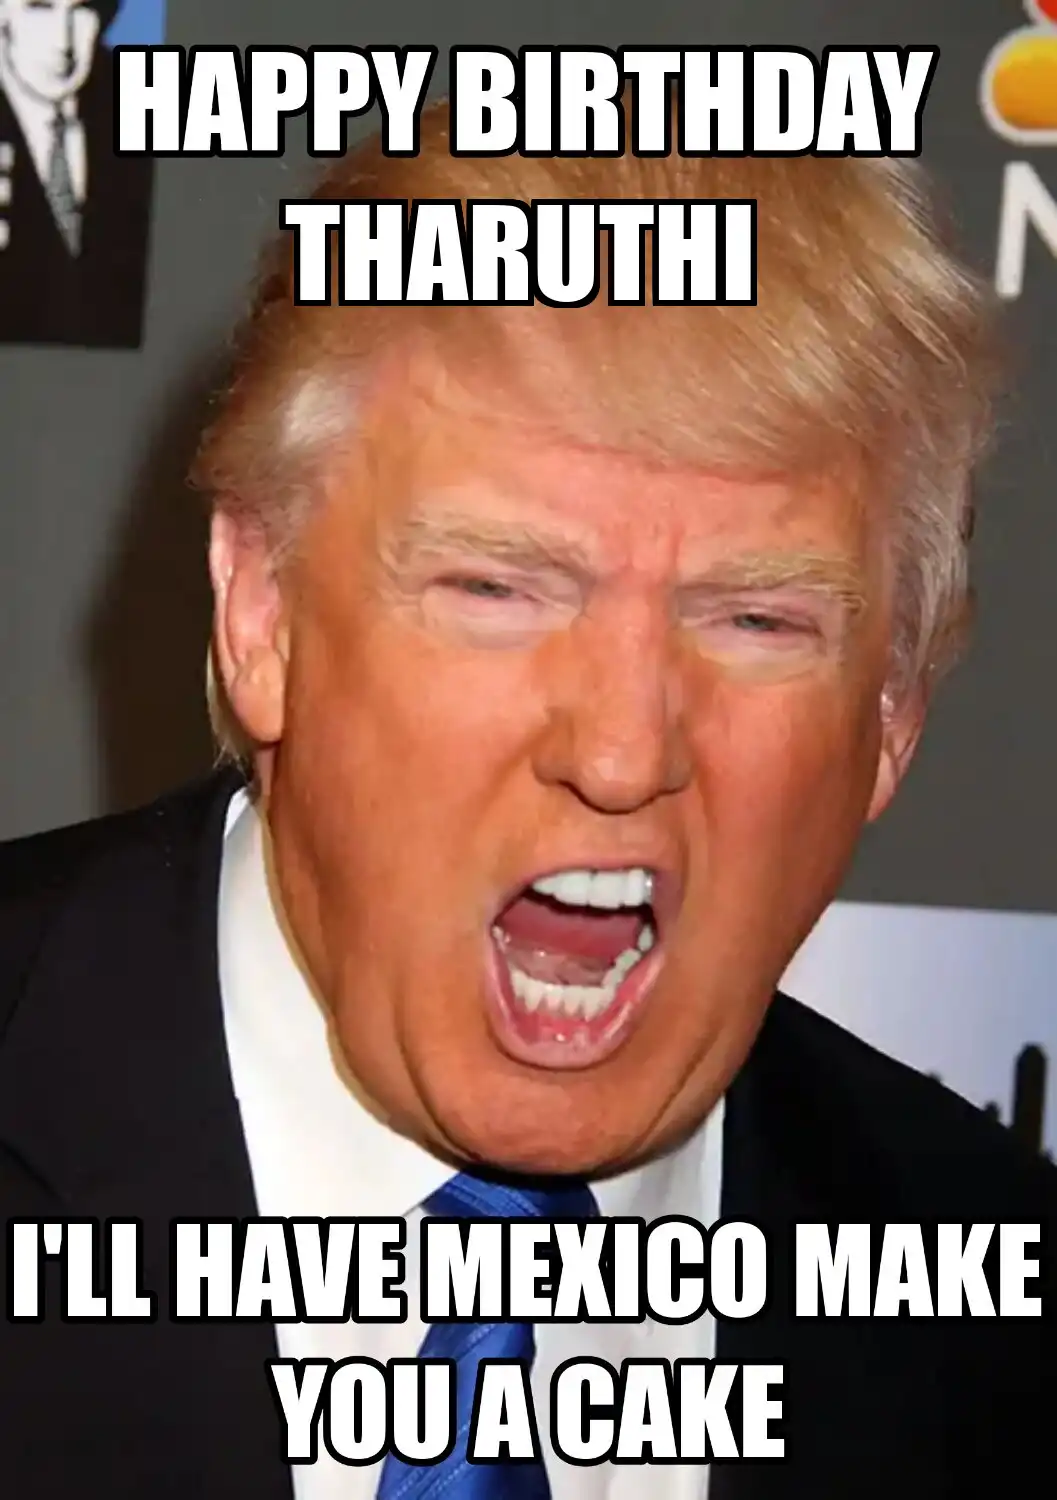 Happy Birthday Tharuthi Mexico Make You A Cake Meme